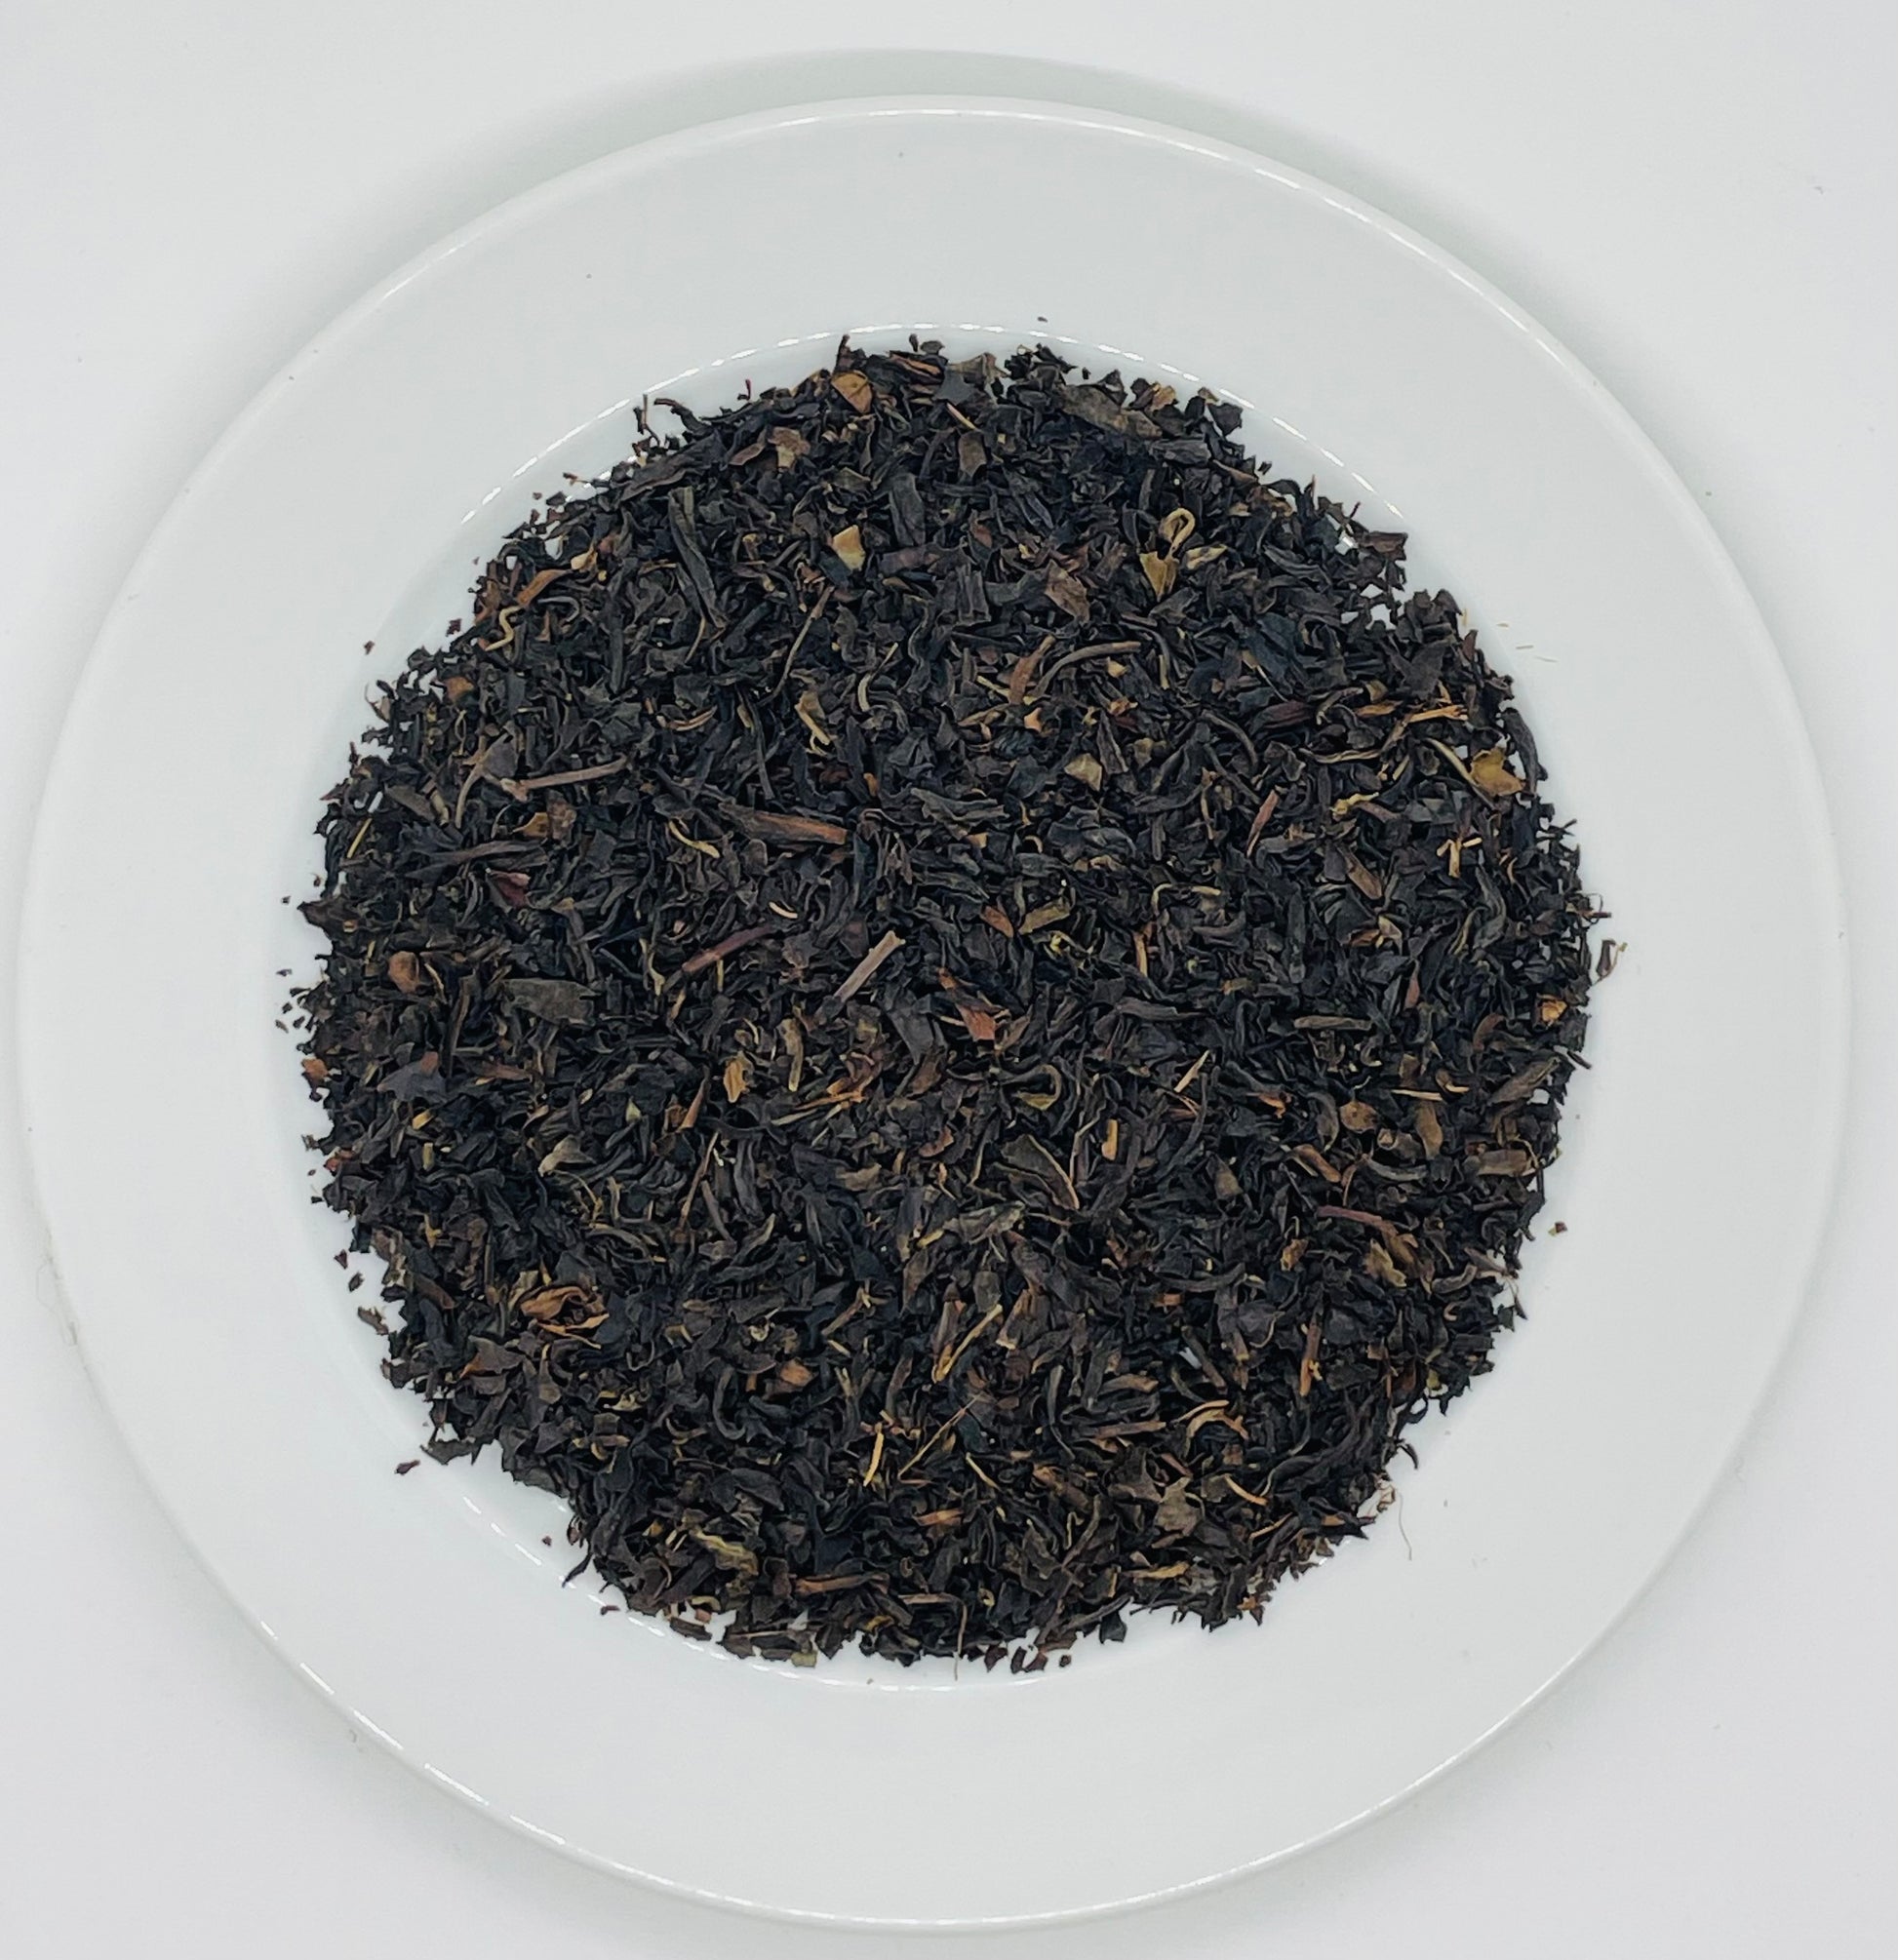 Leaves of freshly dried organic black tea blend. 